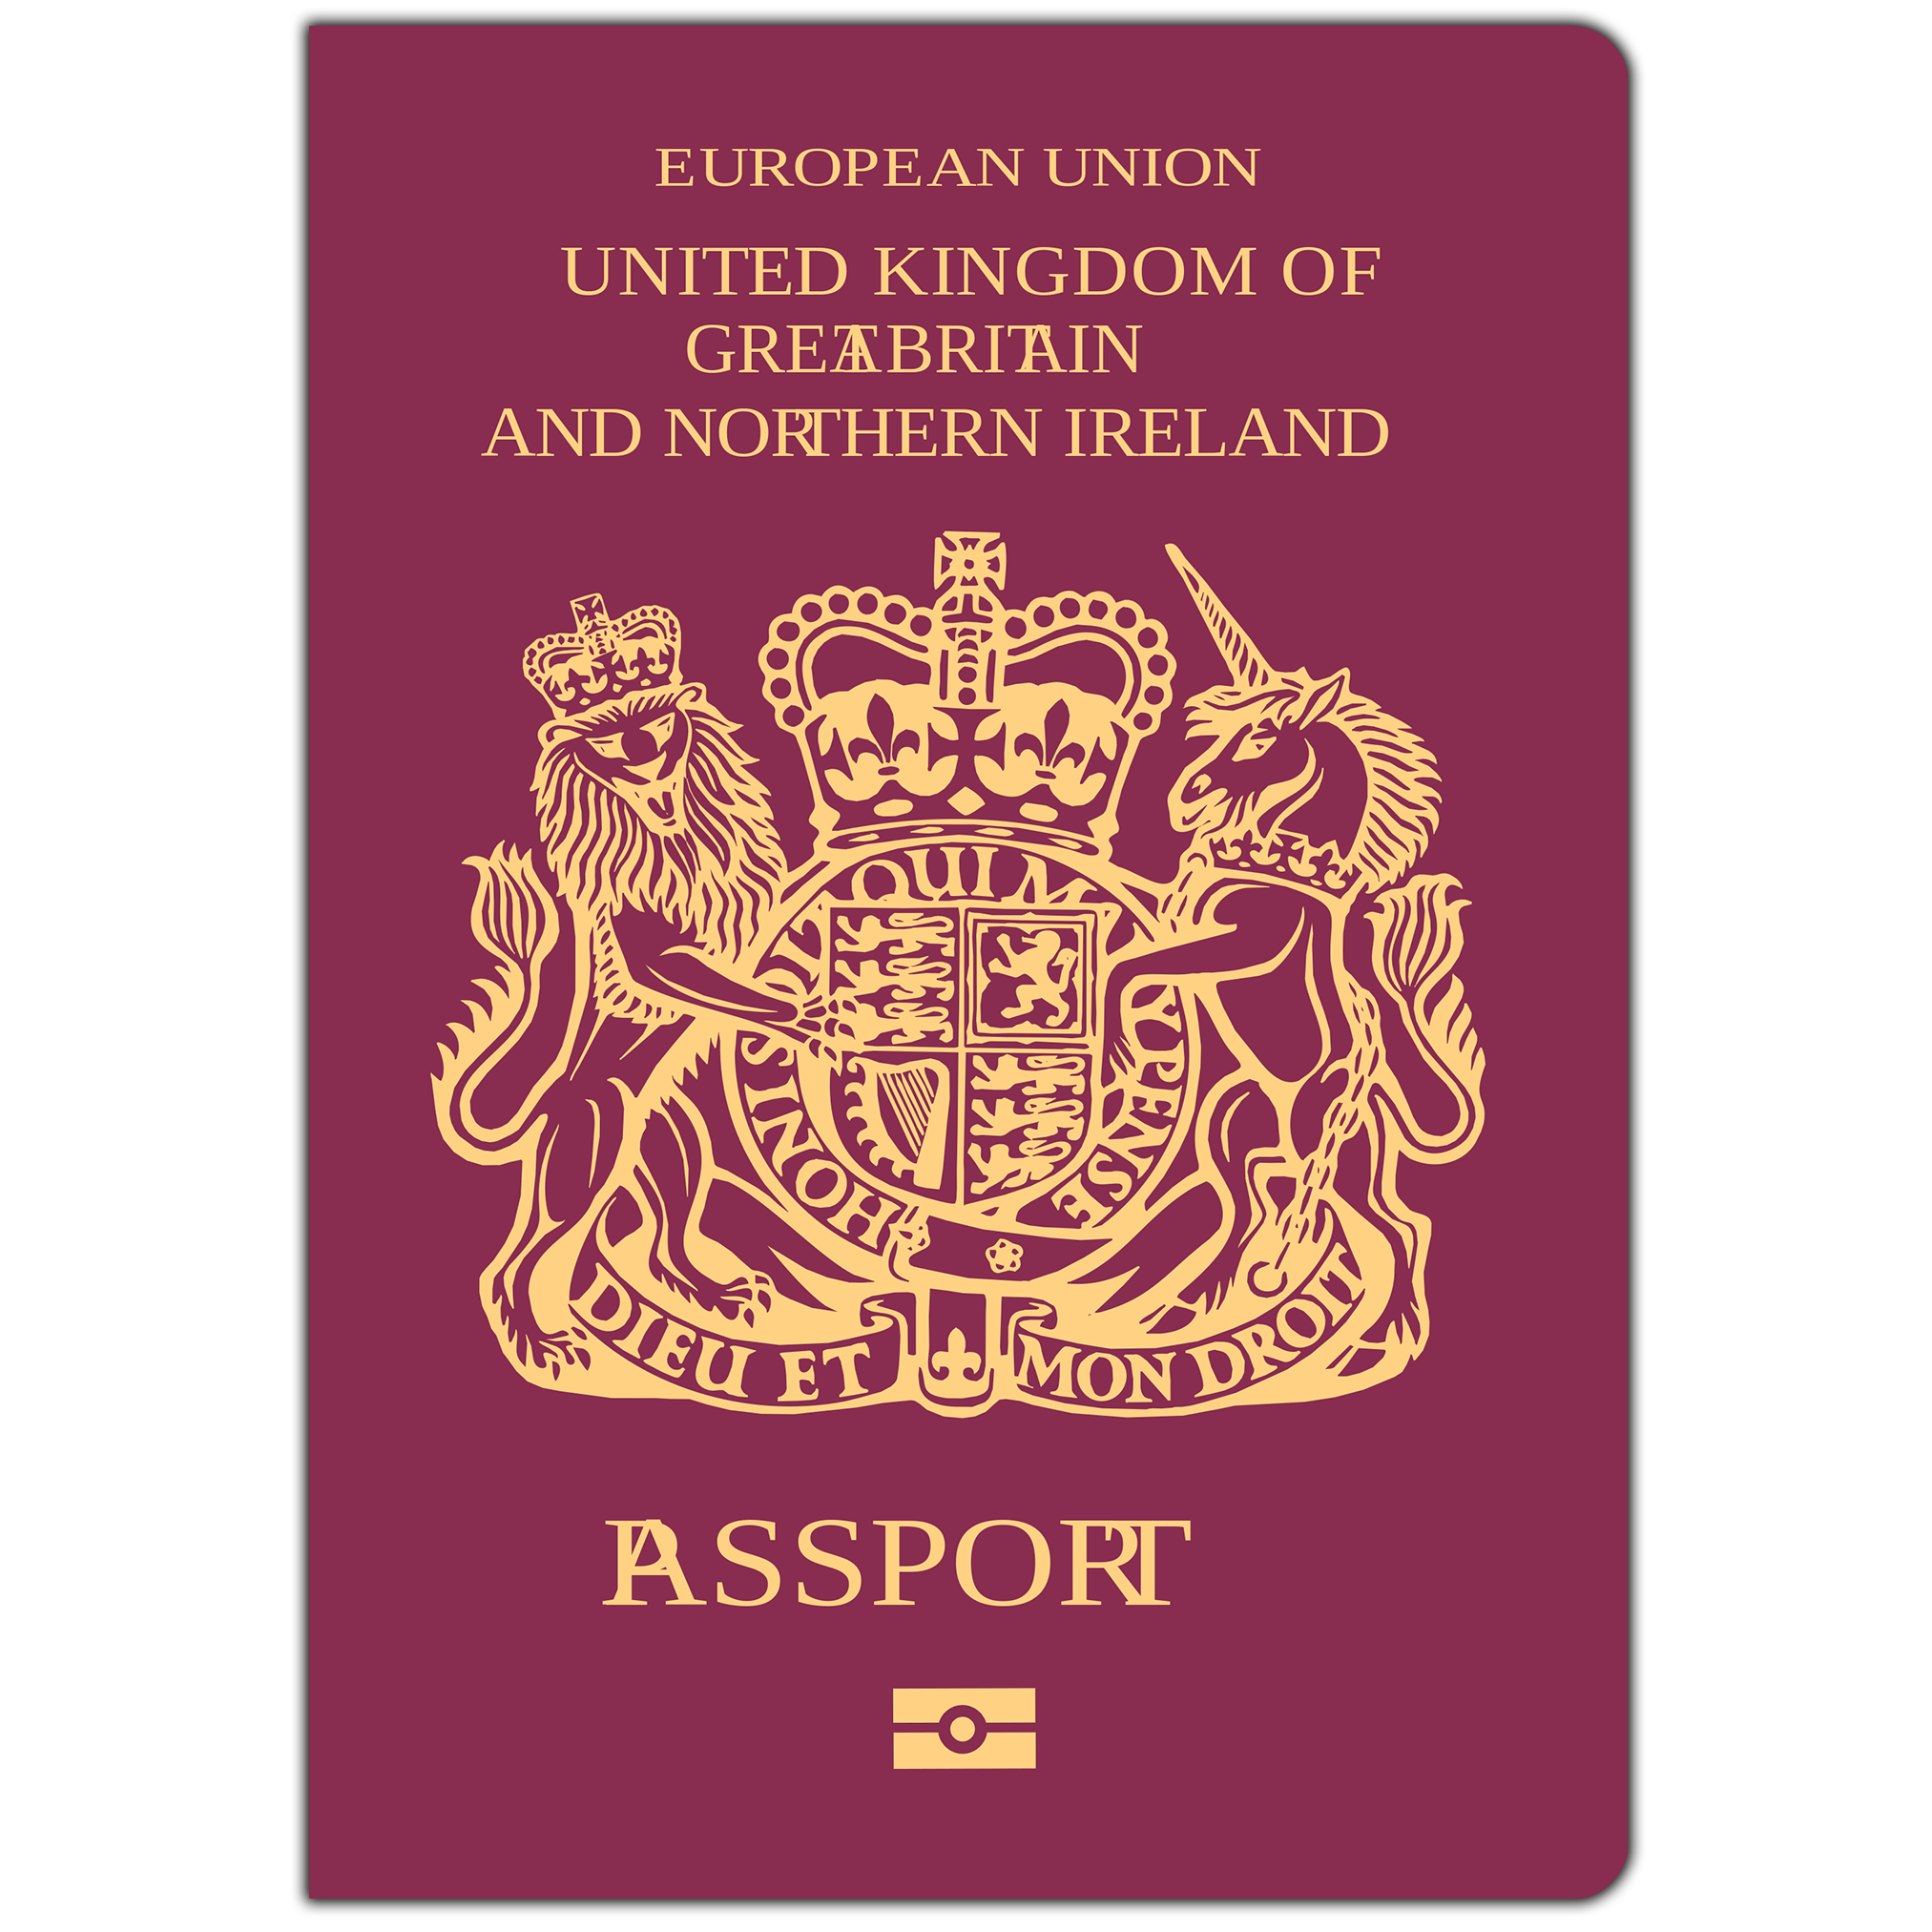 passport clipart passport british